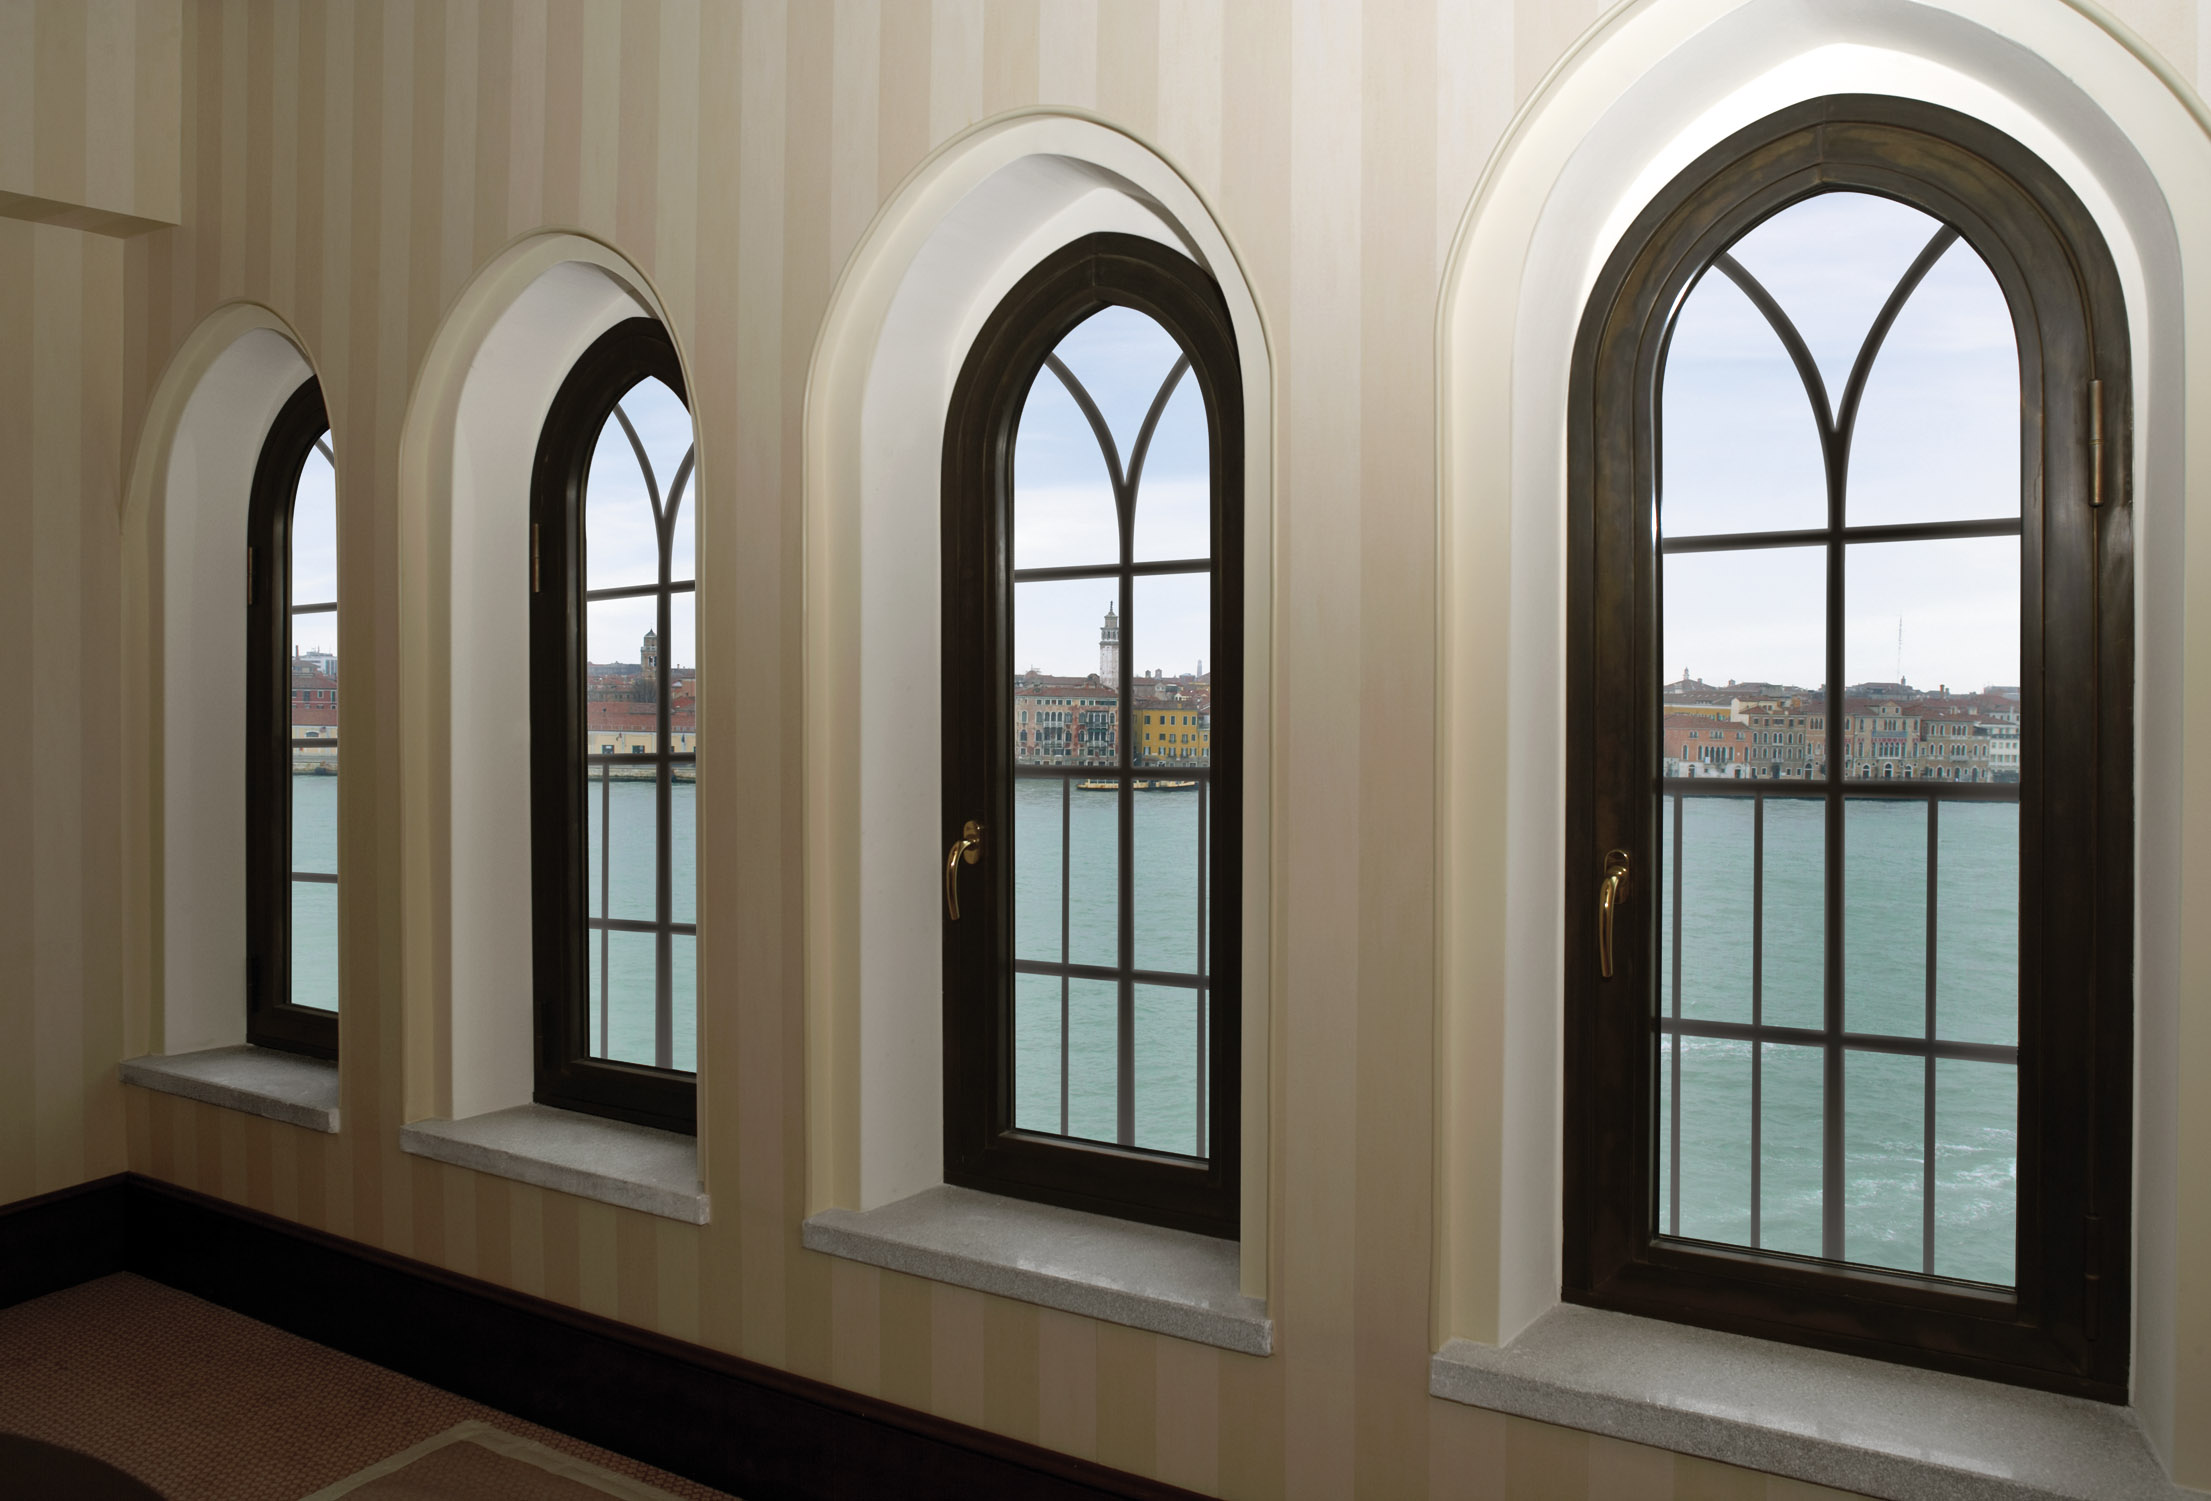 BRONZE WINDOWS AND DOORSSTRENGTH AND BEAUTY COMBINED Steel Windows and Doors